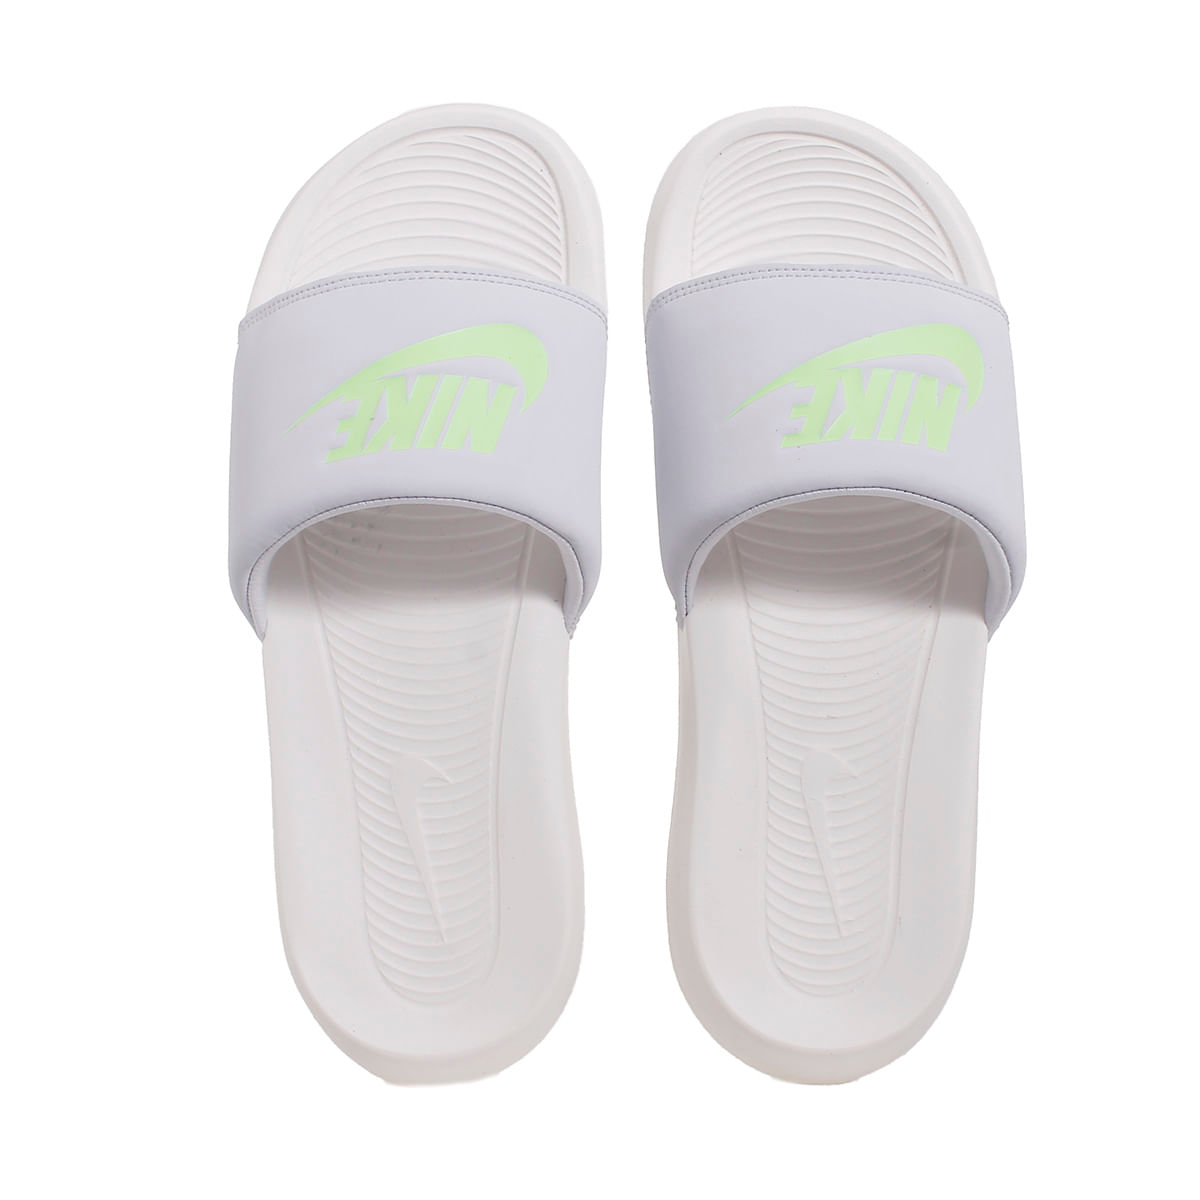 Ojotas - Chinelas - Nike - Calzados de Mujer Sportline Tienda Online - Sportline